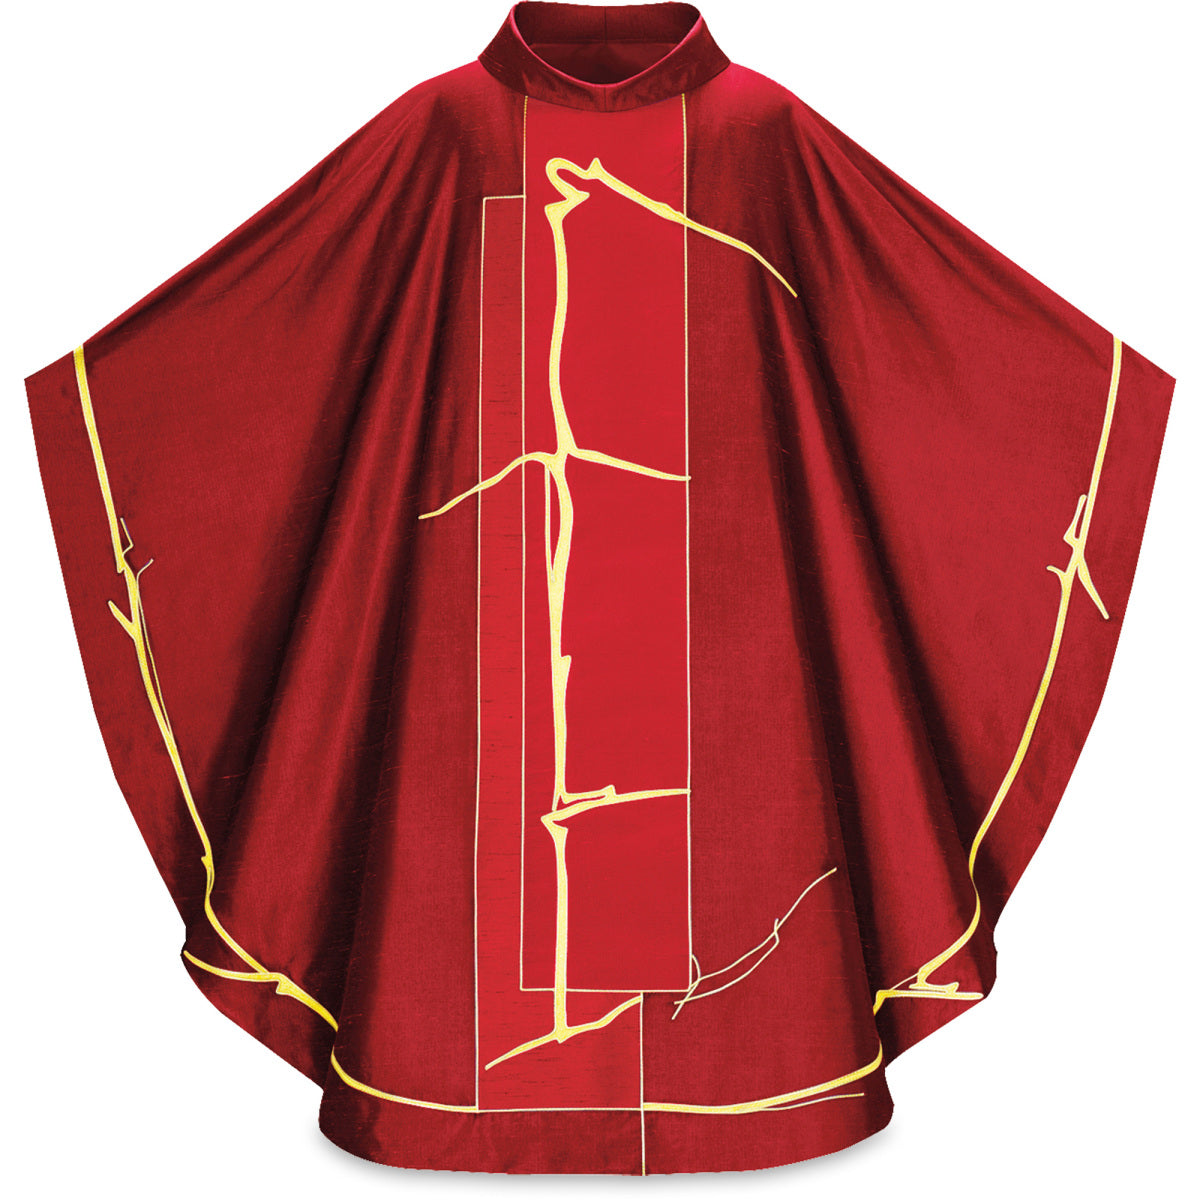 Priest Chasuble | Filo di Luce